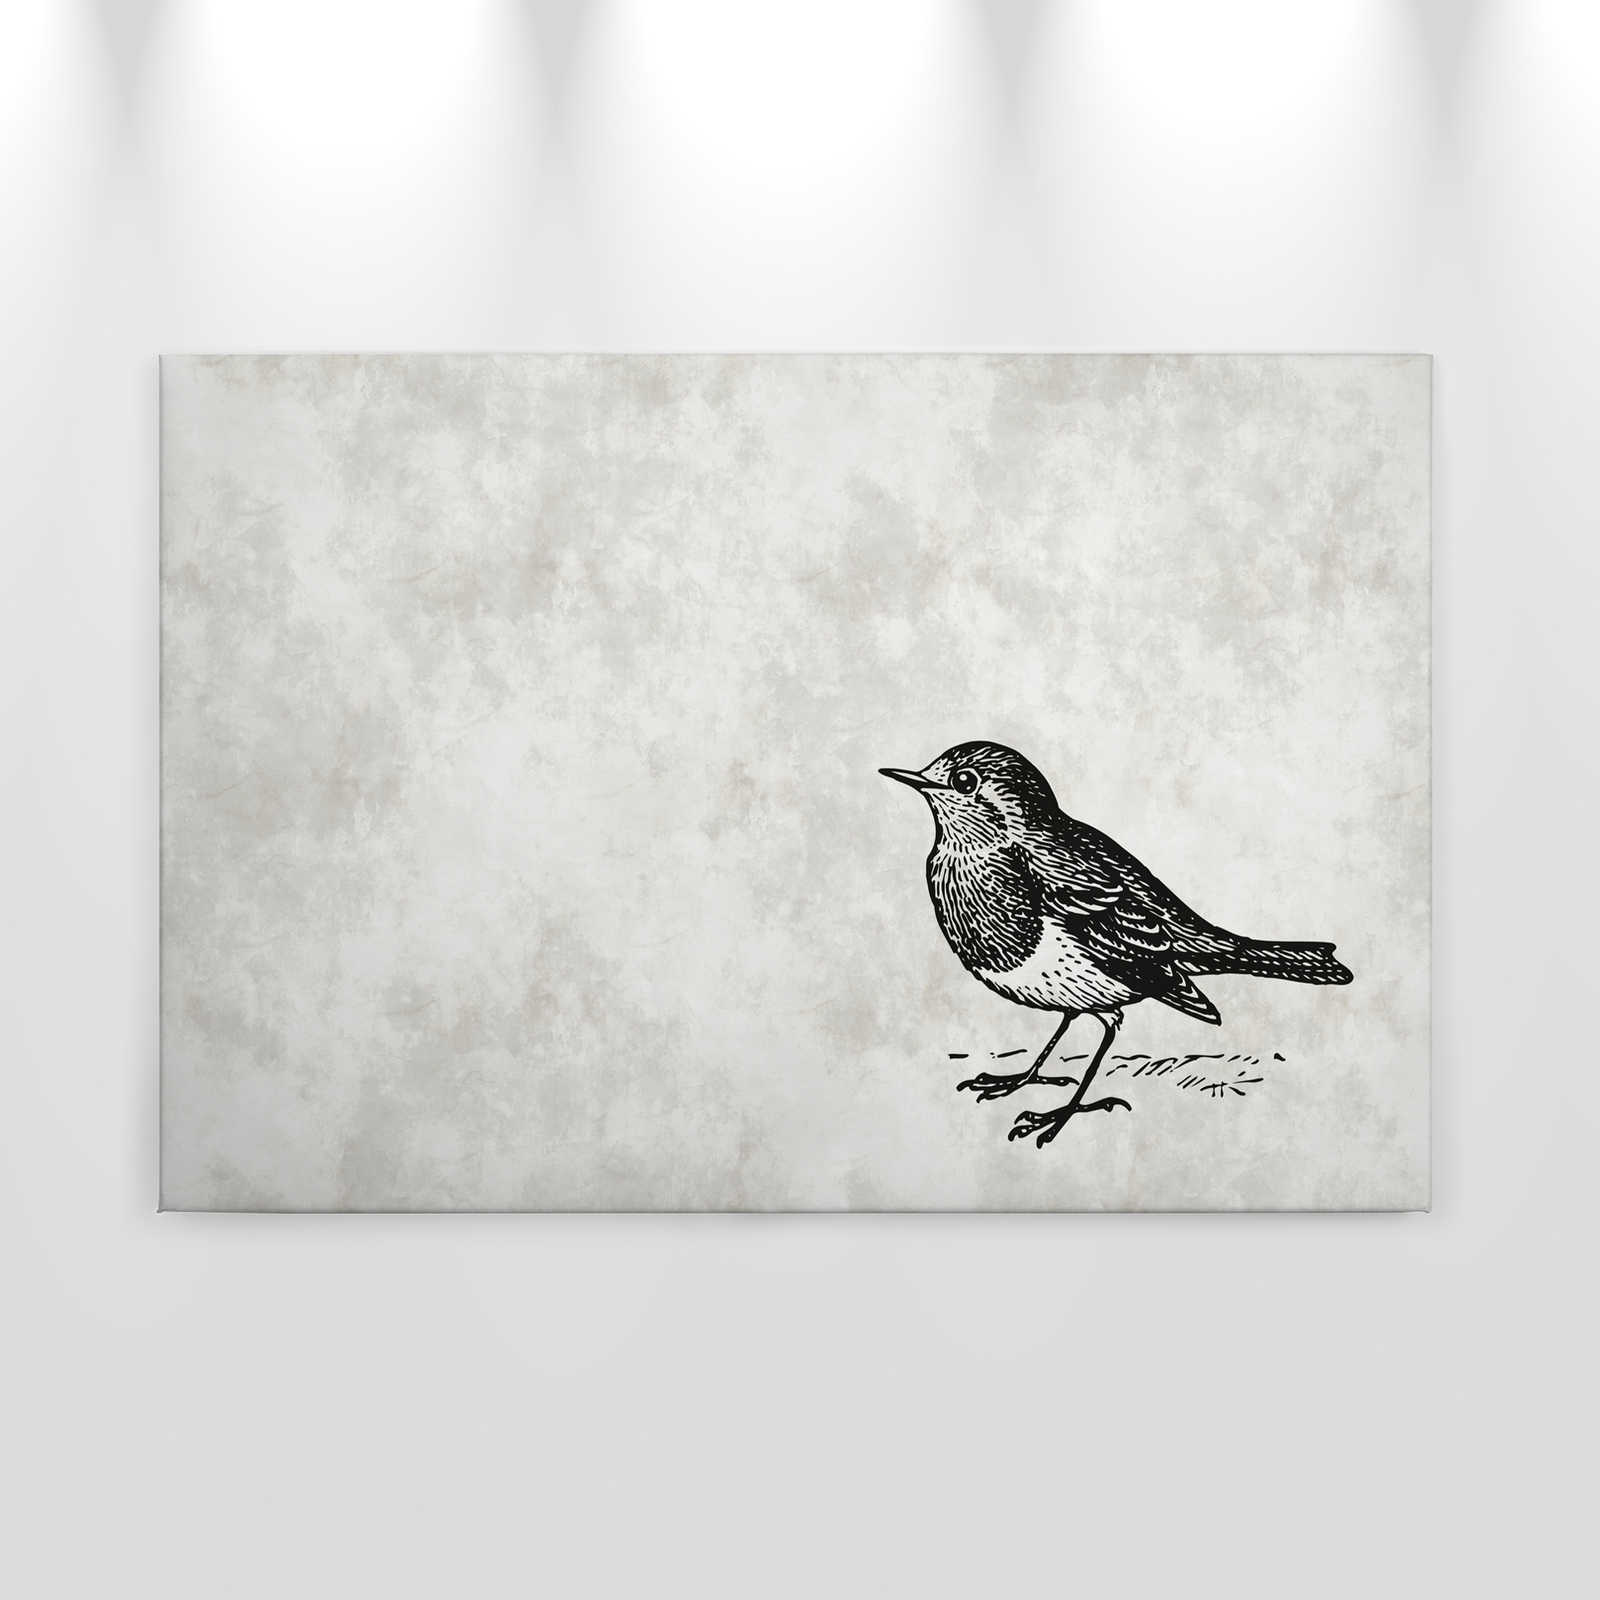             Schwarz-Weißes Leinwandbild mit Vogel – 0,90 m x 0,60 m
        